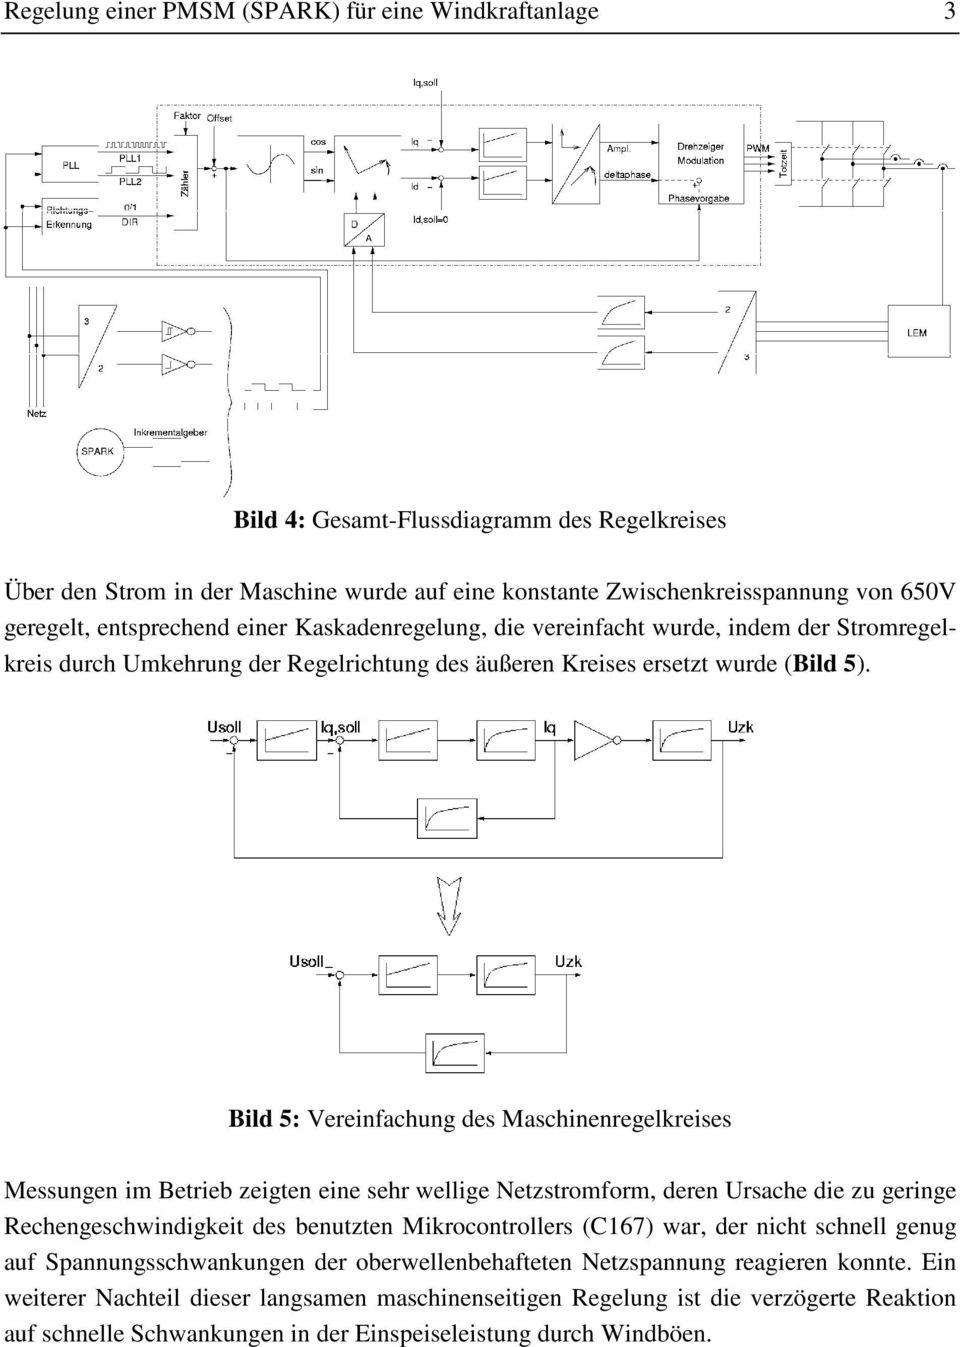 Bild 5: Vereinfachung des Maschinenregelkreises Messungen im Betrieb zeigten eine sehr wellige Netzstromform, deren Ursache die zu geringe Rechengeschwindigkeit des benutzten Mikrocontrollers (C167)